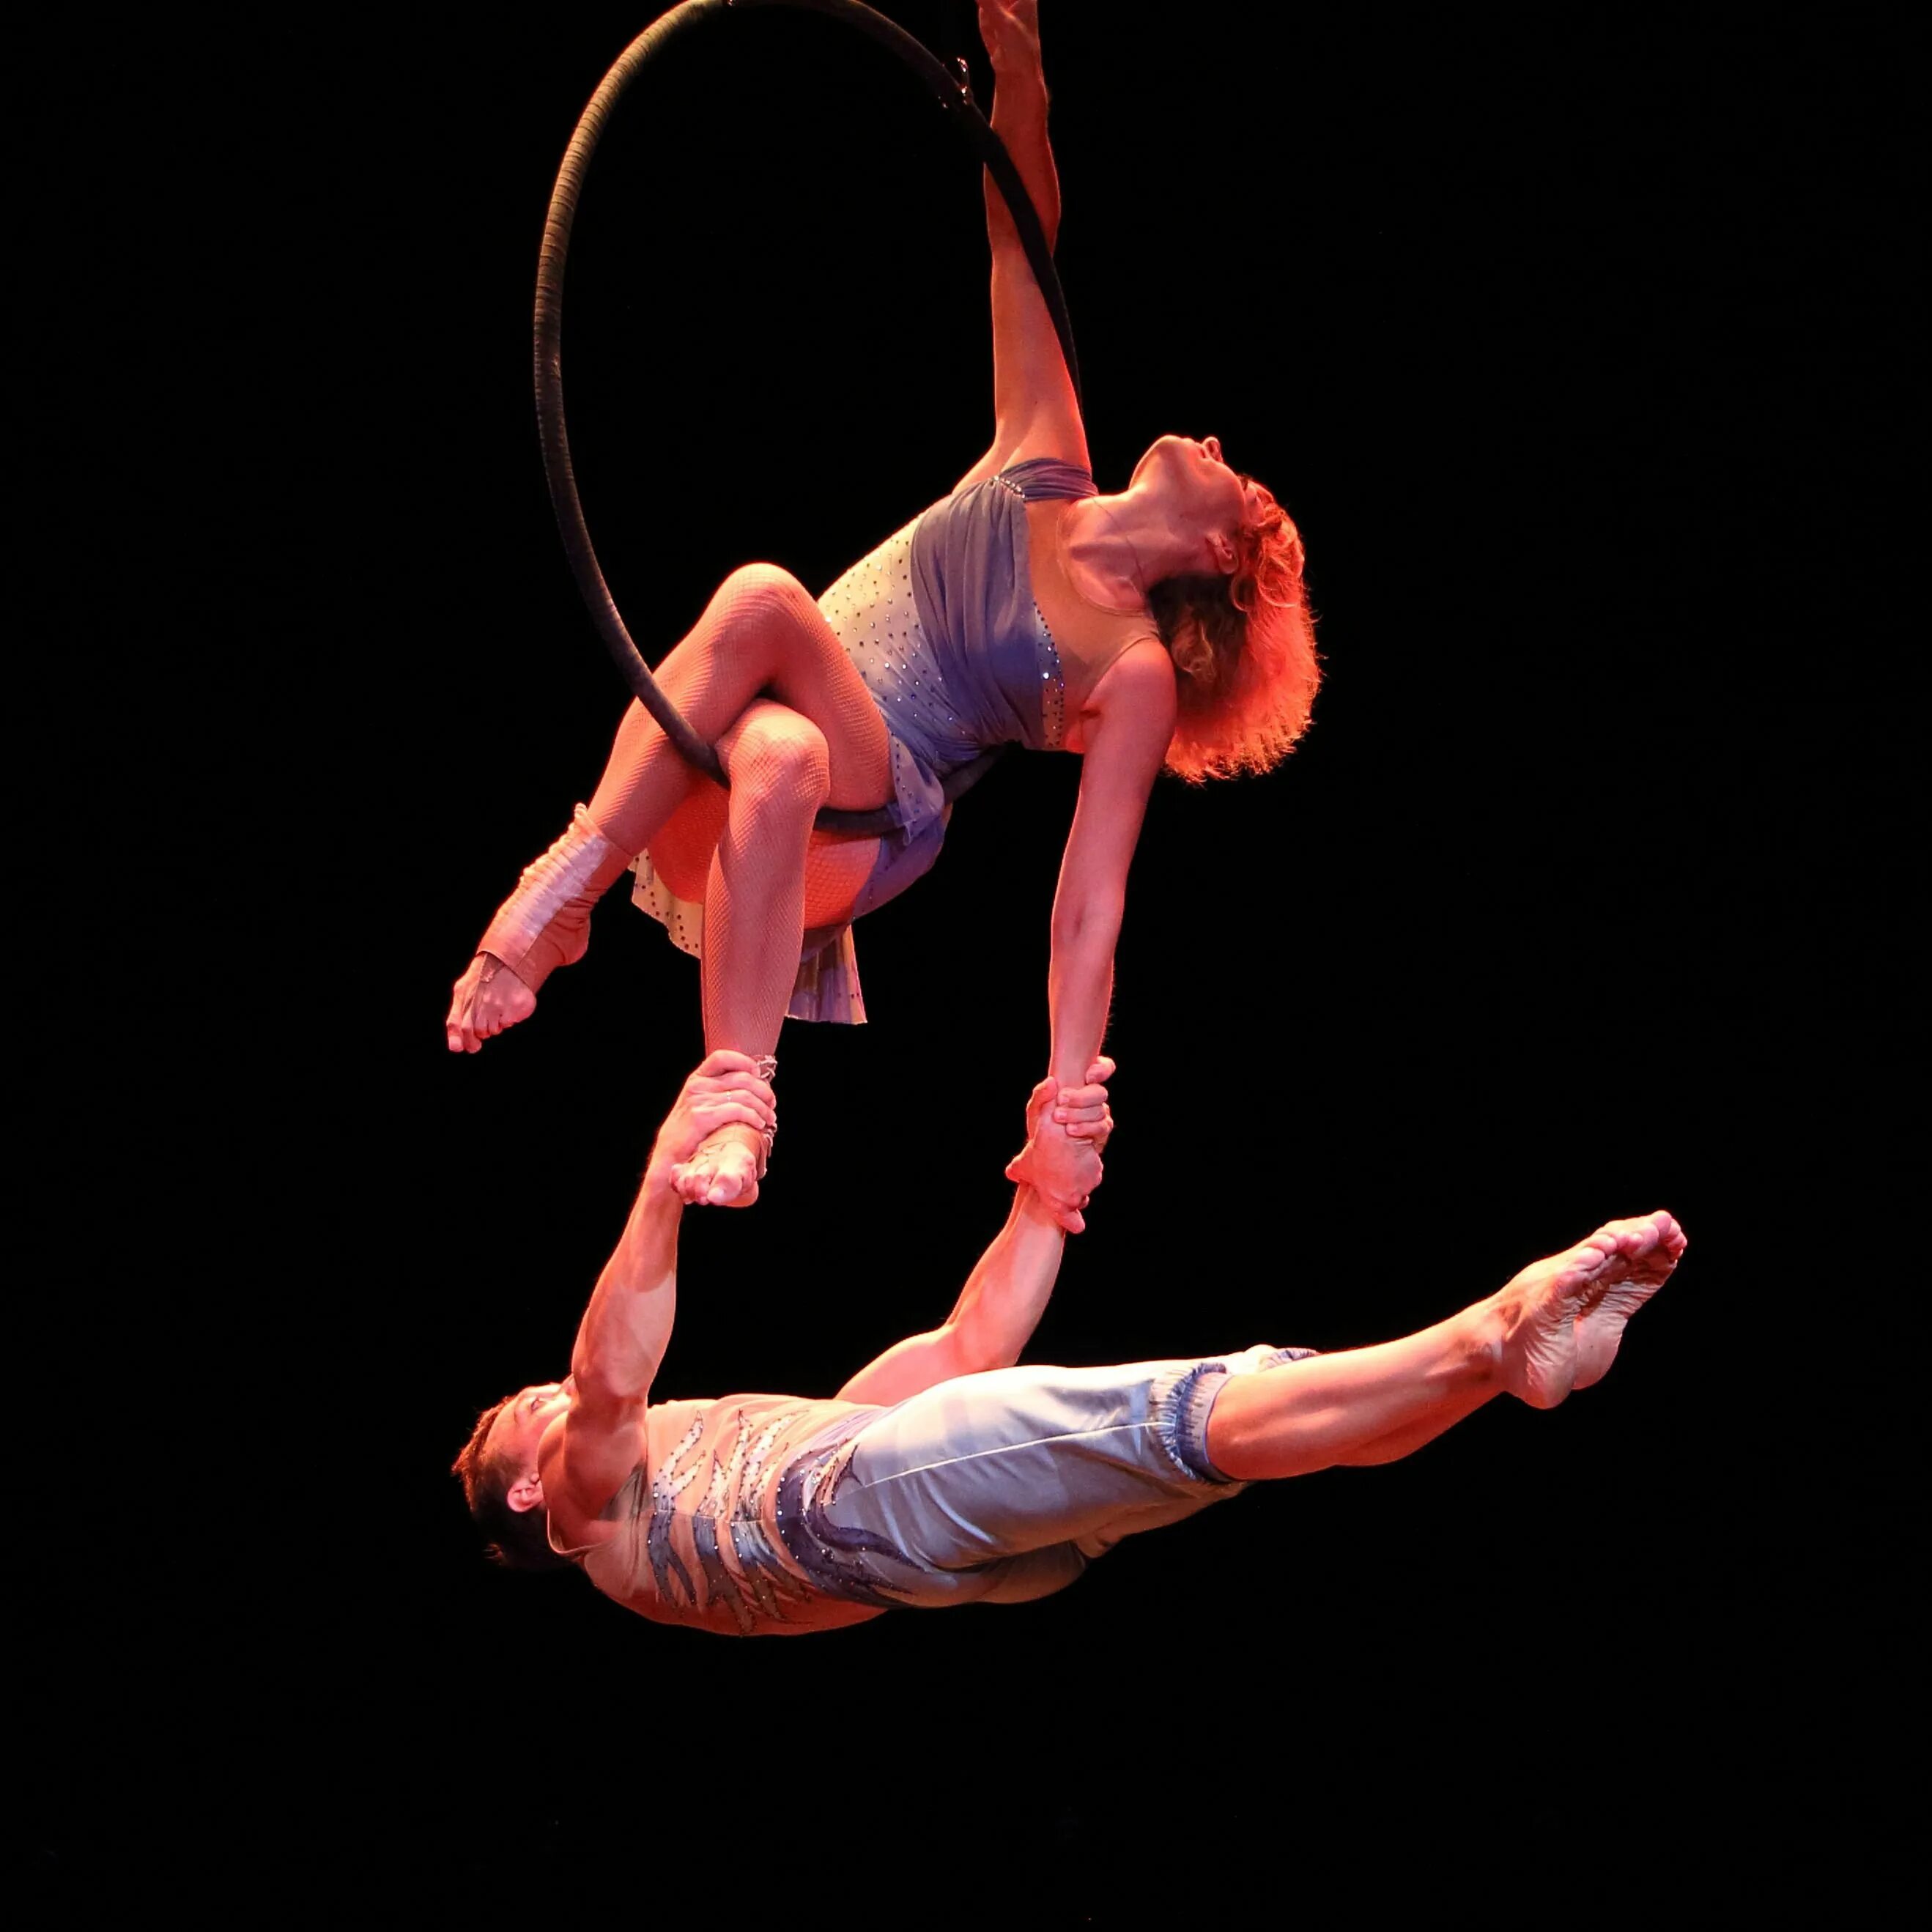 Эквилибристика гимнастика цирк. Aerial Hoop воздушное кольцо. Воздушные гимнасты дуэт. Эквилибристика что это такое простыми